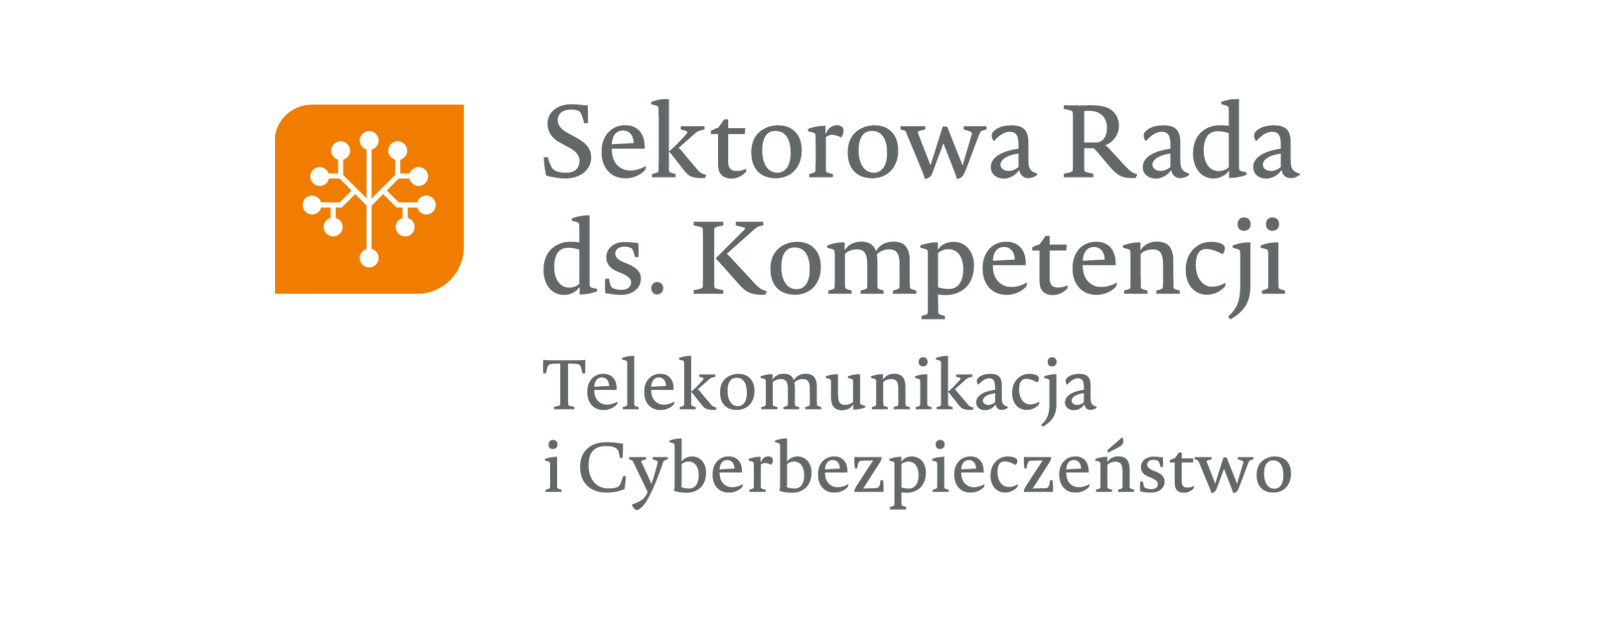 sektorowa-rada-ds-kompetencji_telekomunikacja_i_cyberbezpieczenstwo.png